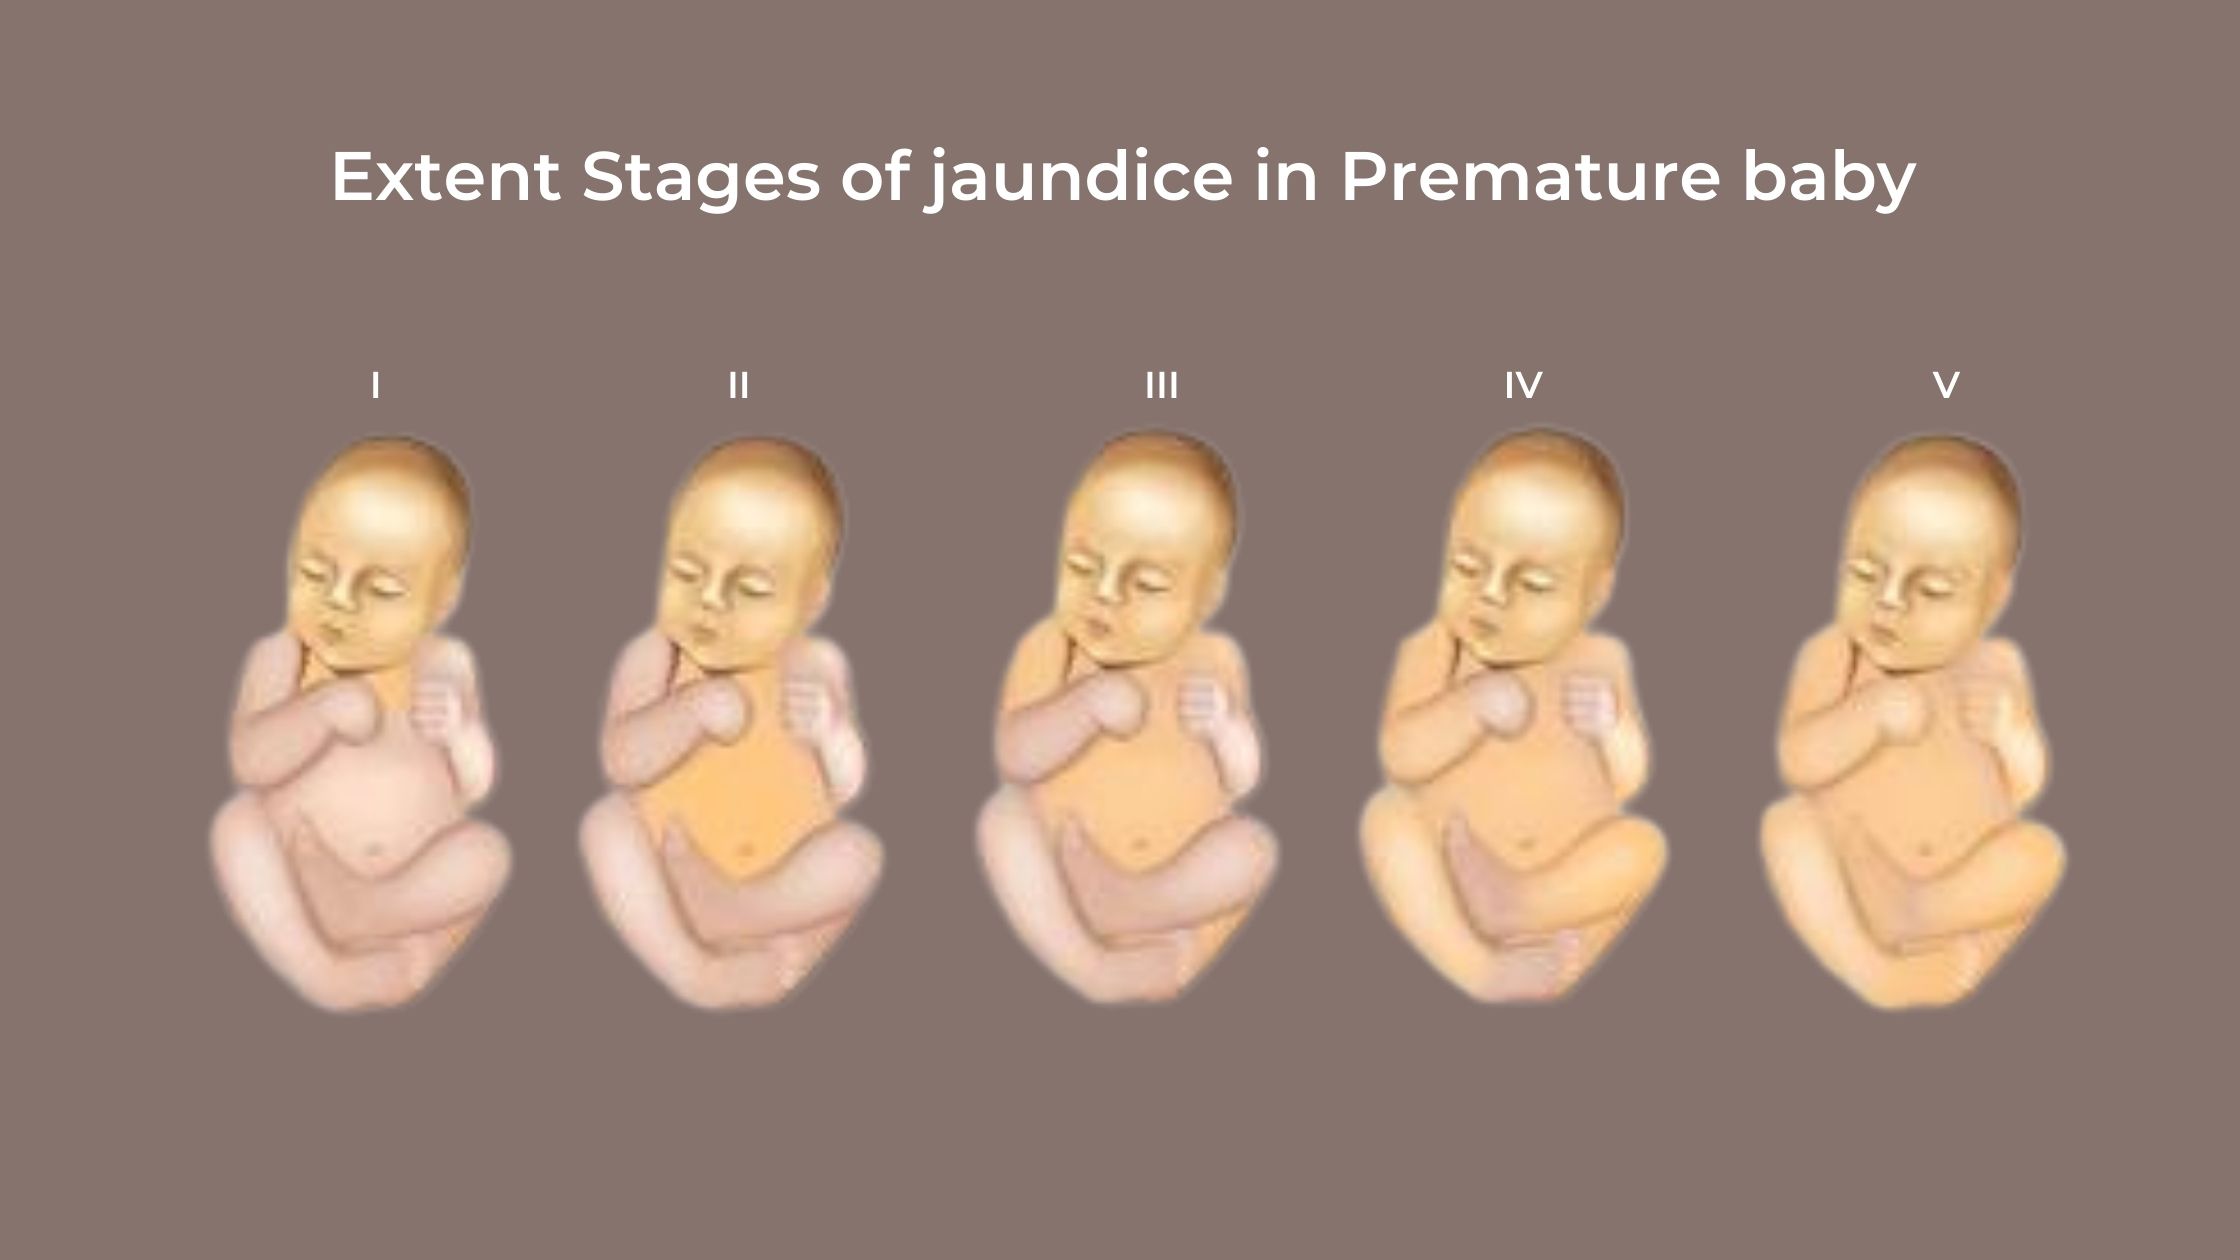 Neonatal Jaundice